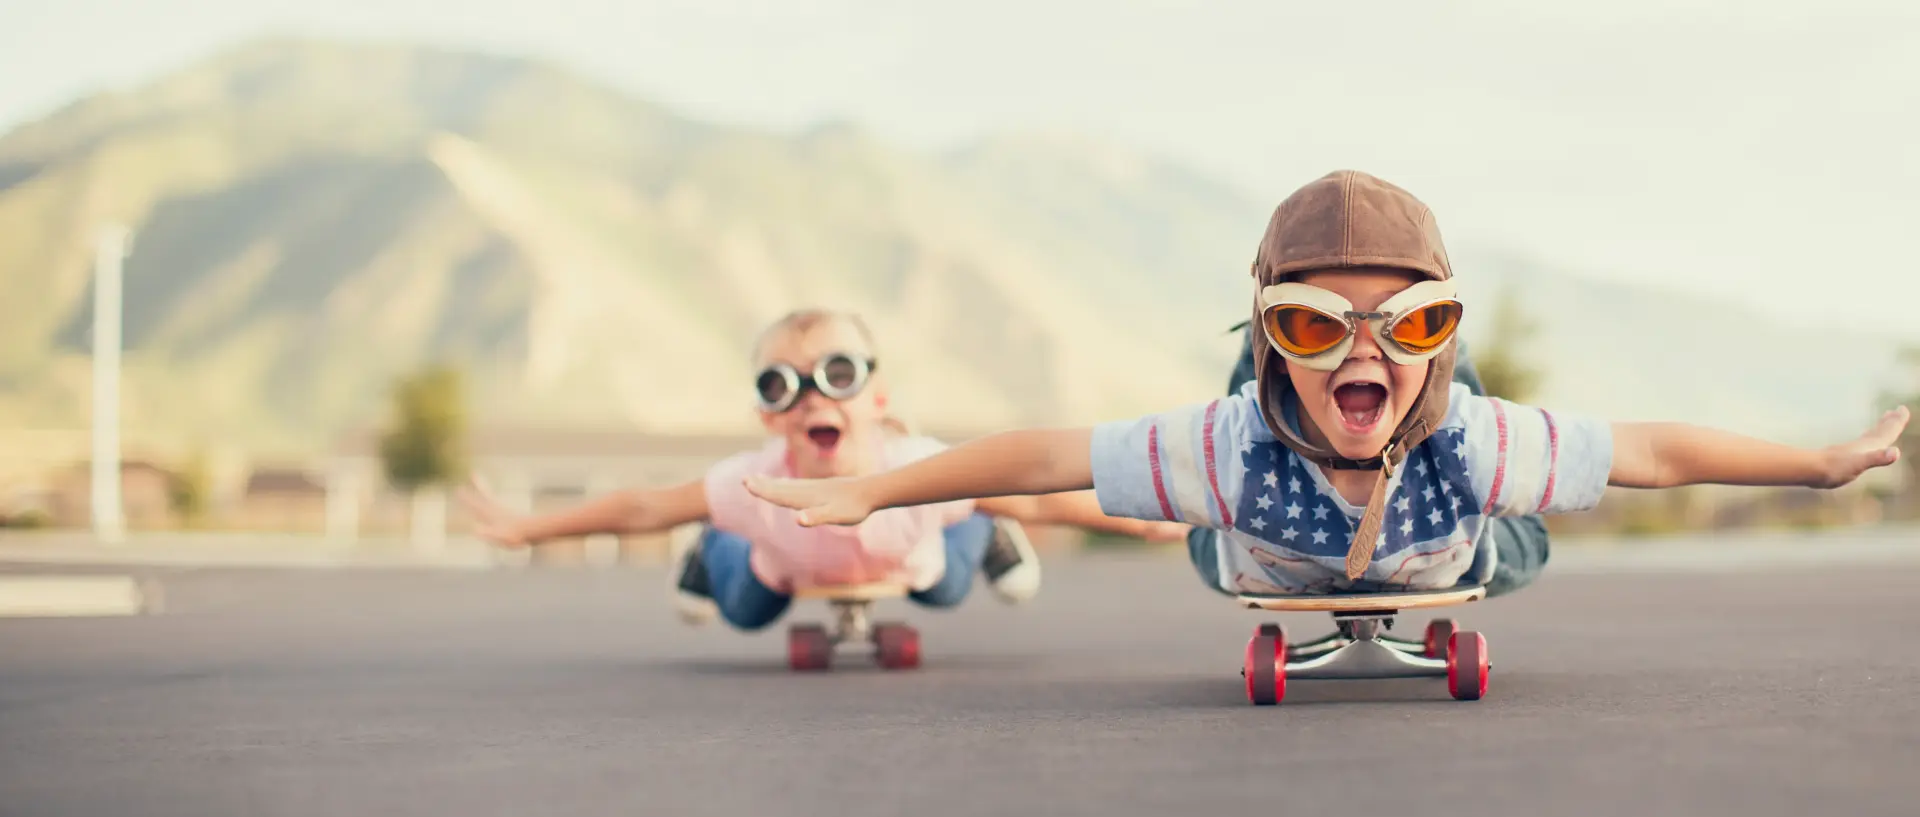 Glückliche Kinder fahren auf dem Bauch liegend Skateboard